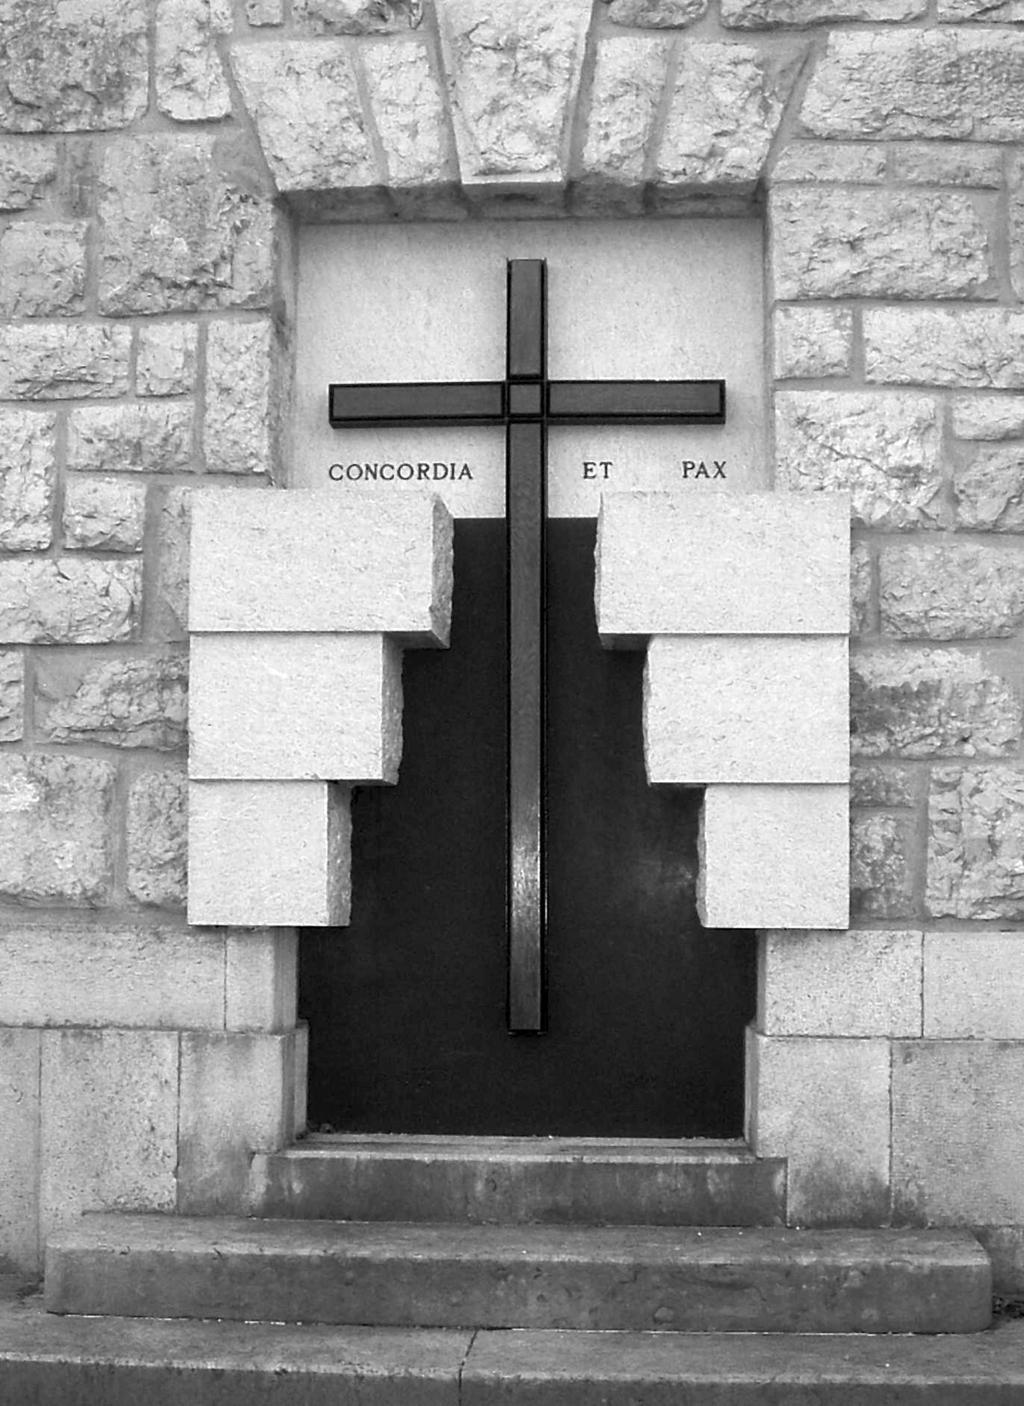 strani in organizira različne spravne slovesnosti ob zgodovinskih simbolih, npr. na Sabotinu. Na Sveti gori so leta 1995 postavili skupno tablo za vse žrtve, ubite, padle itn.